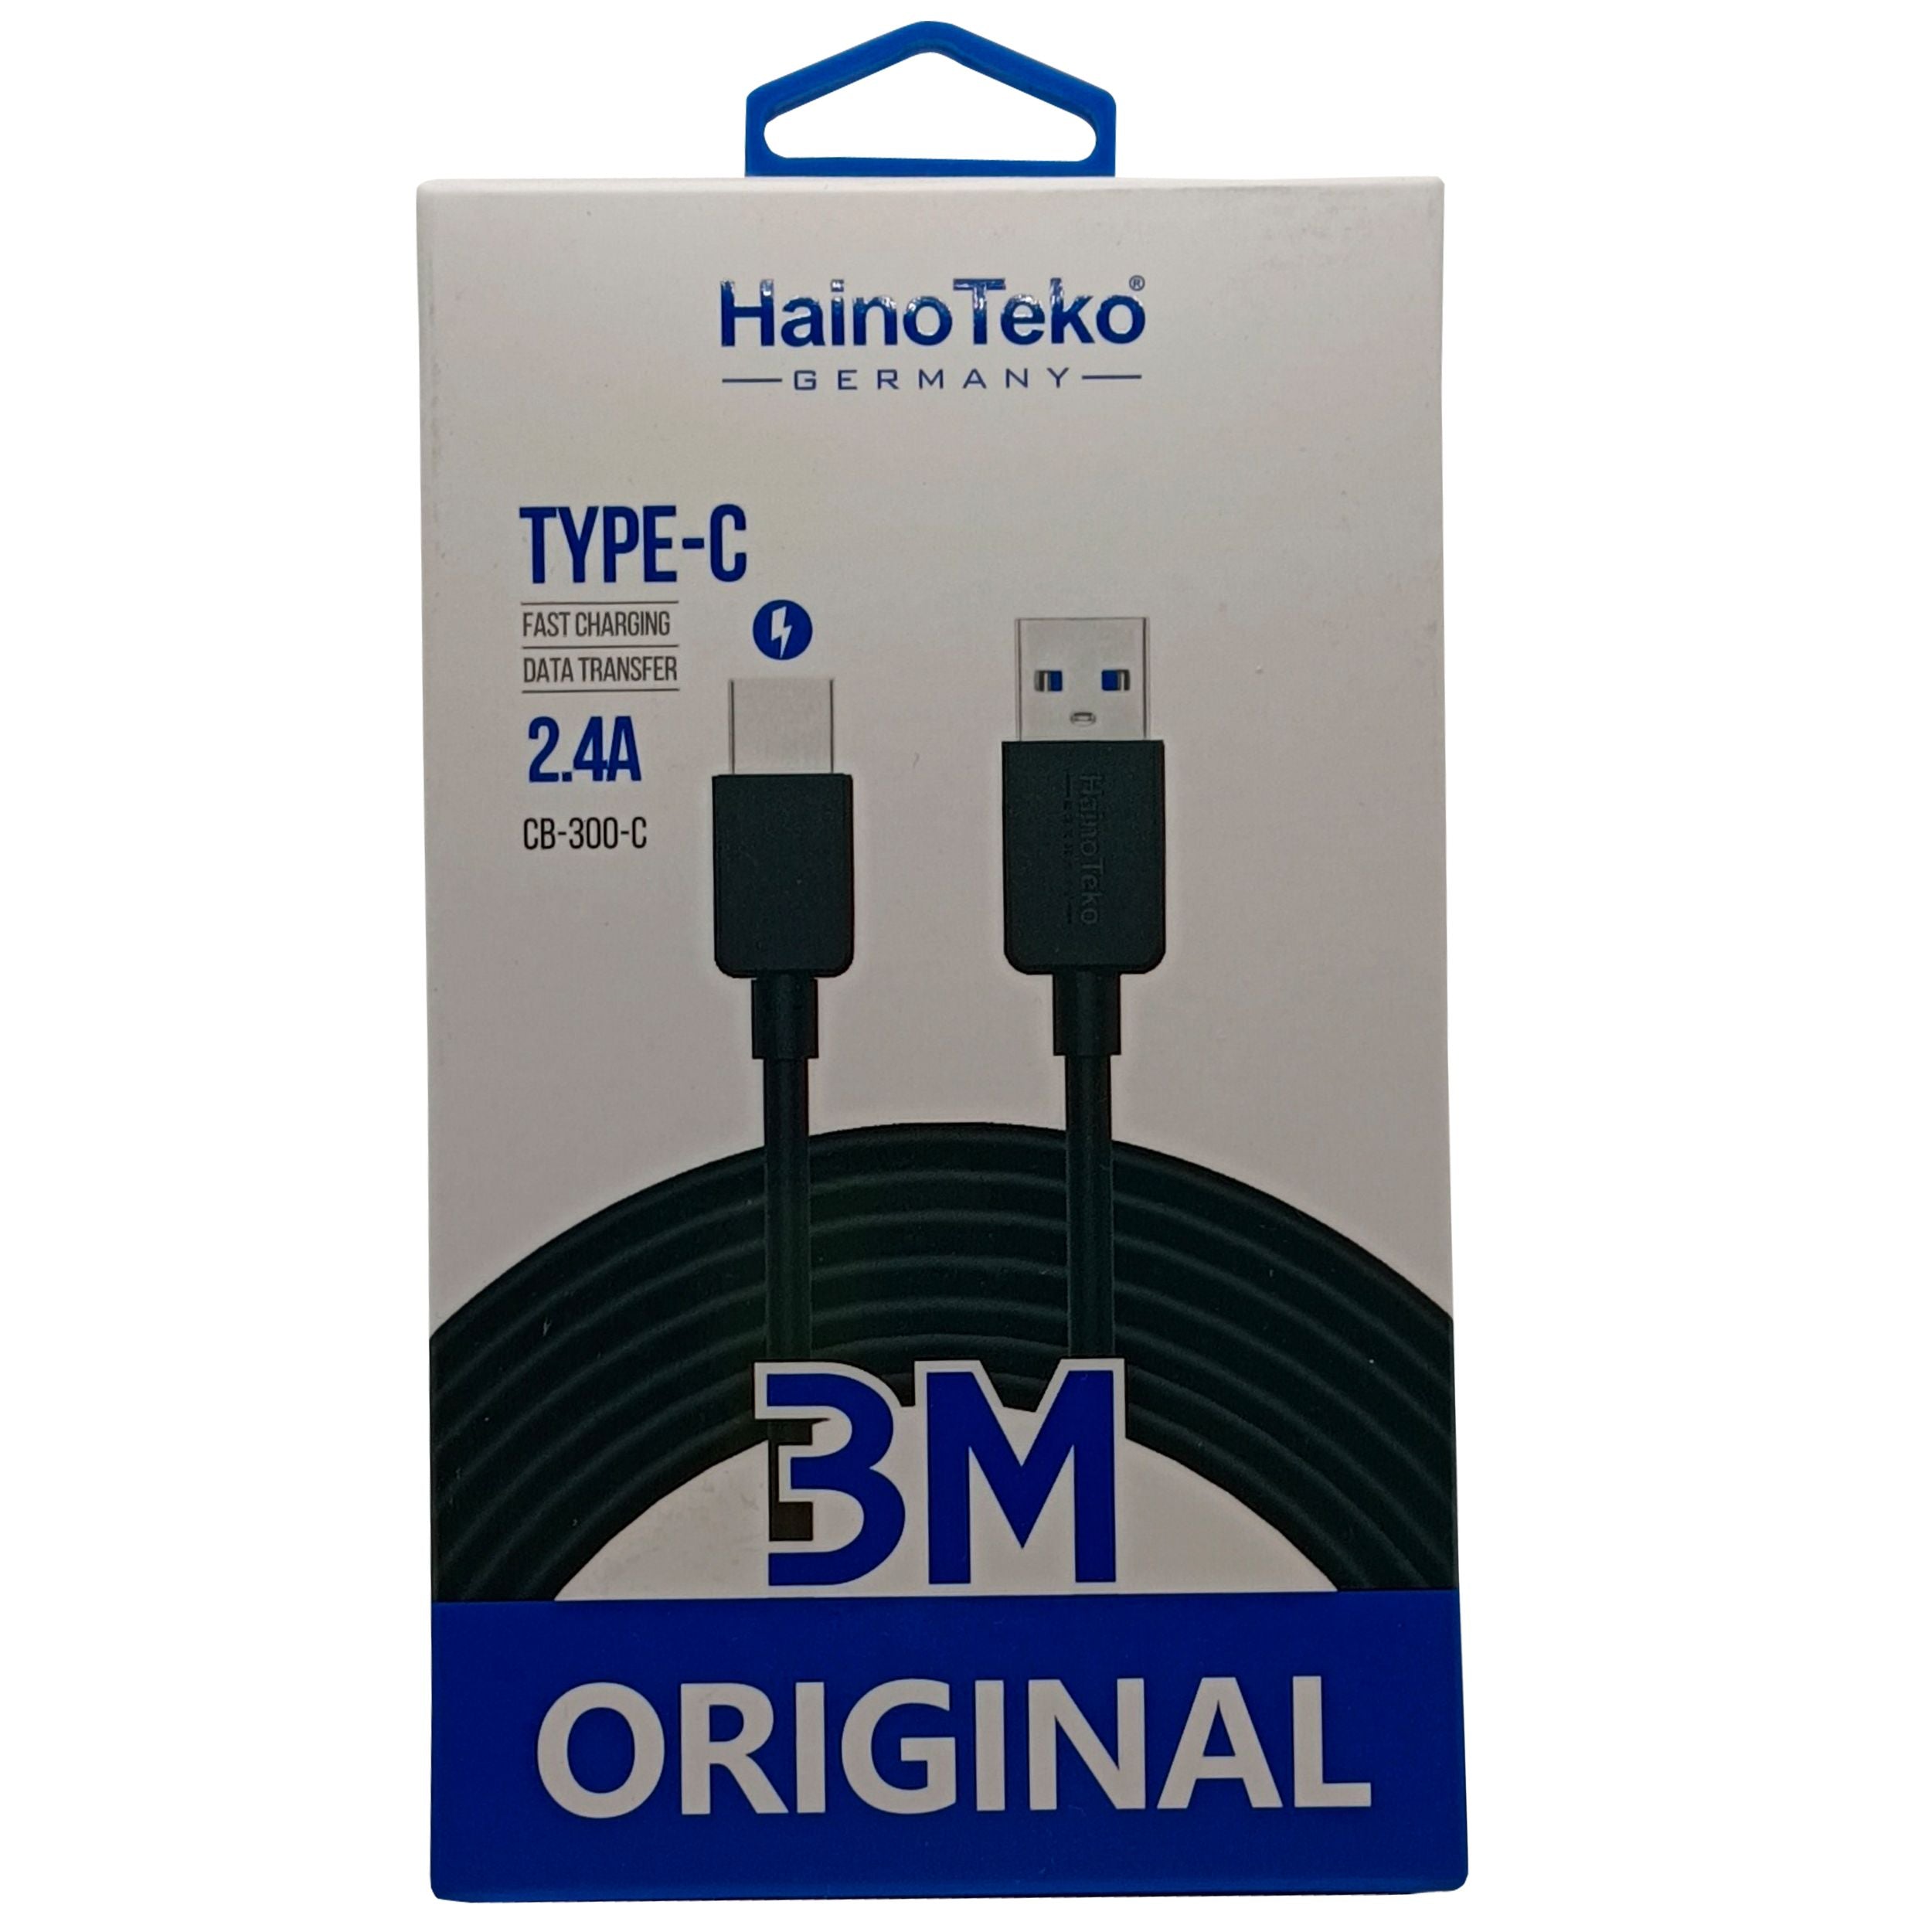 HainoTeko Type C Fast Charging Data Cable